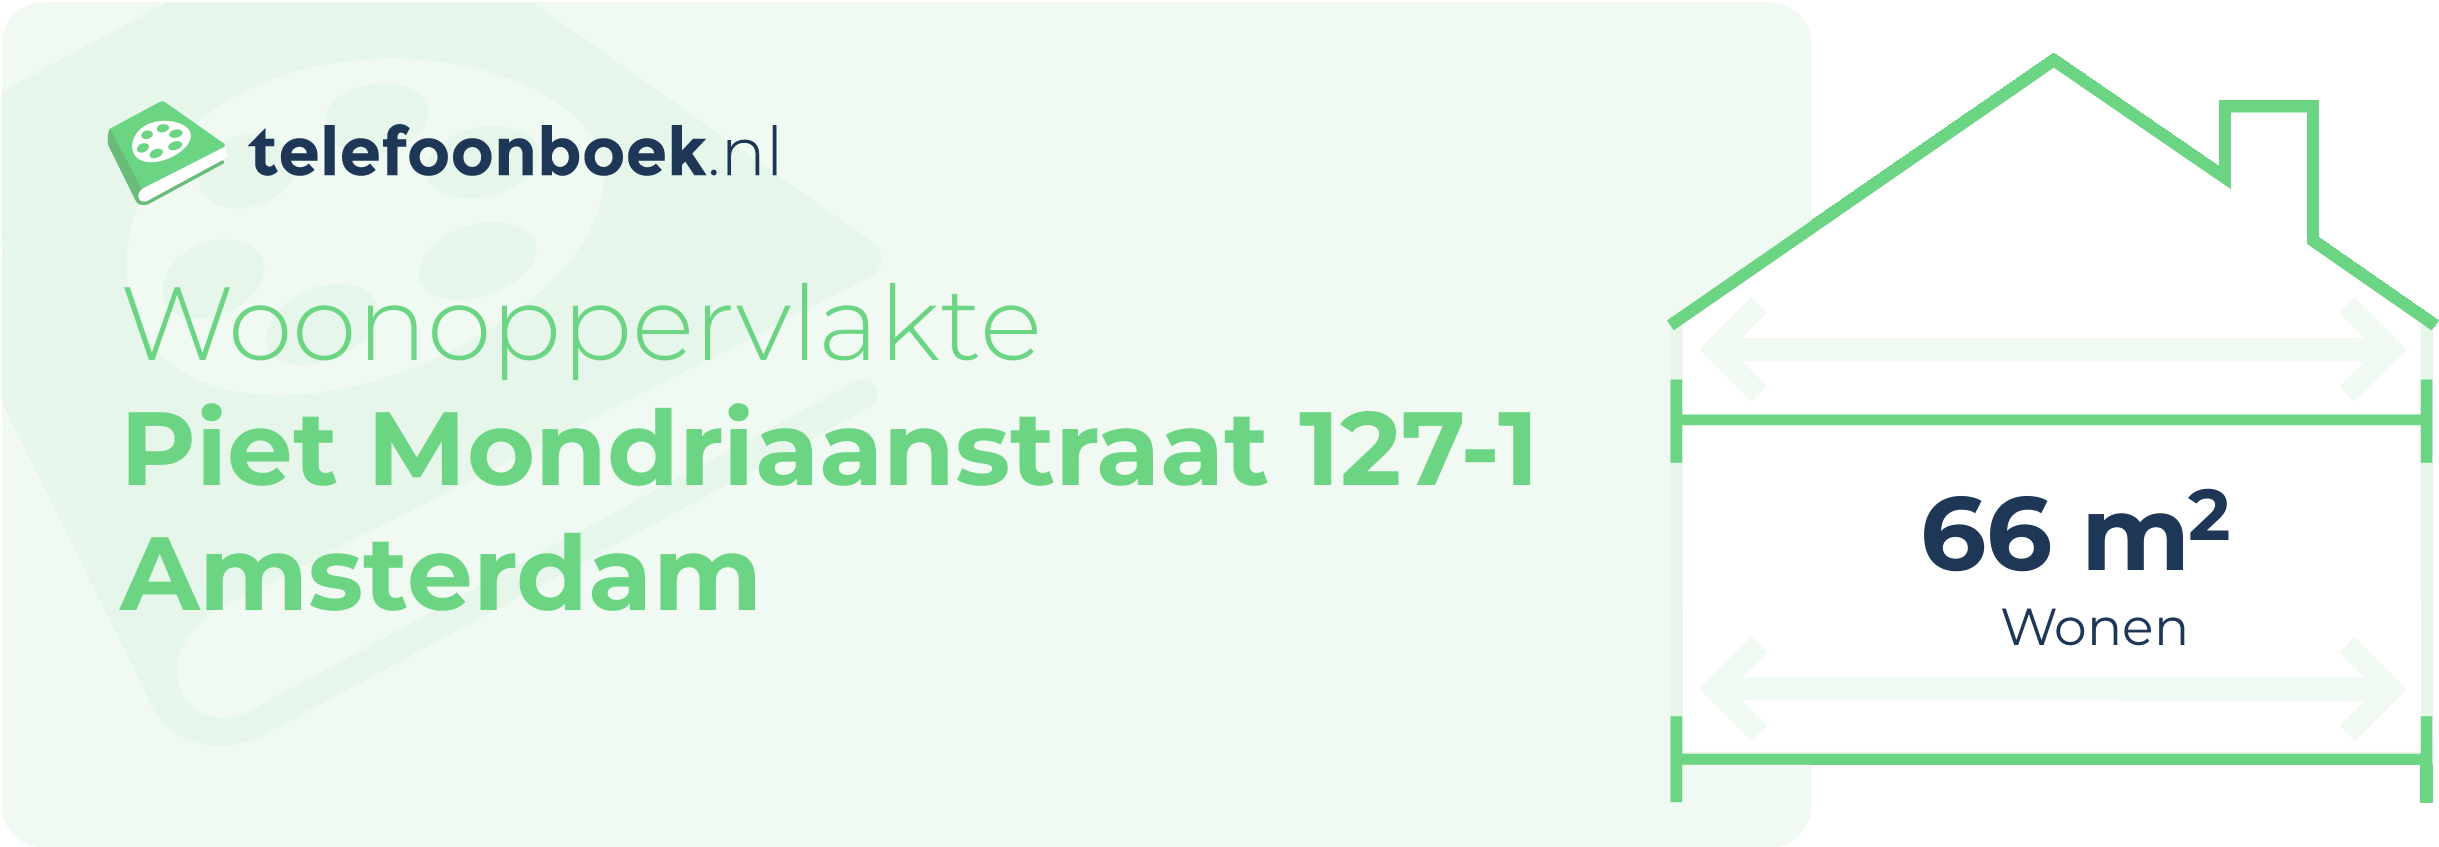 Woonoppervlakte Piet Mondriaanstraat 127-1 Amsterdam